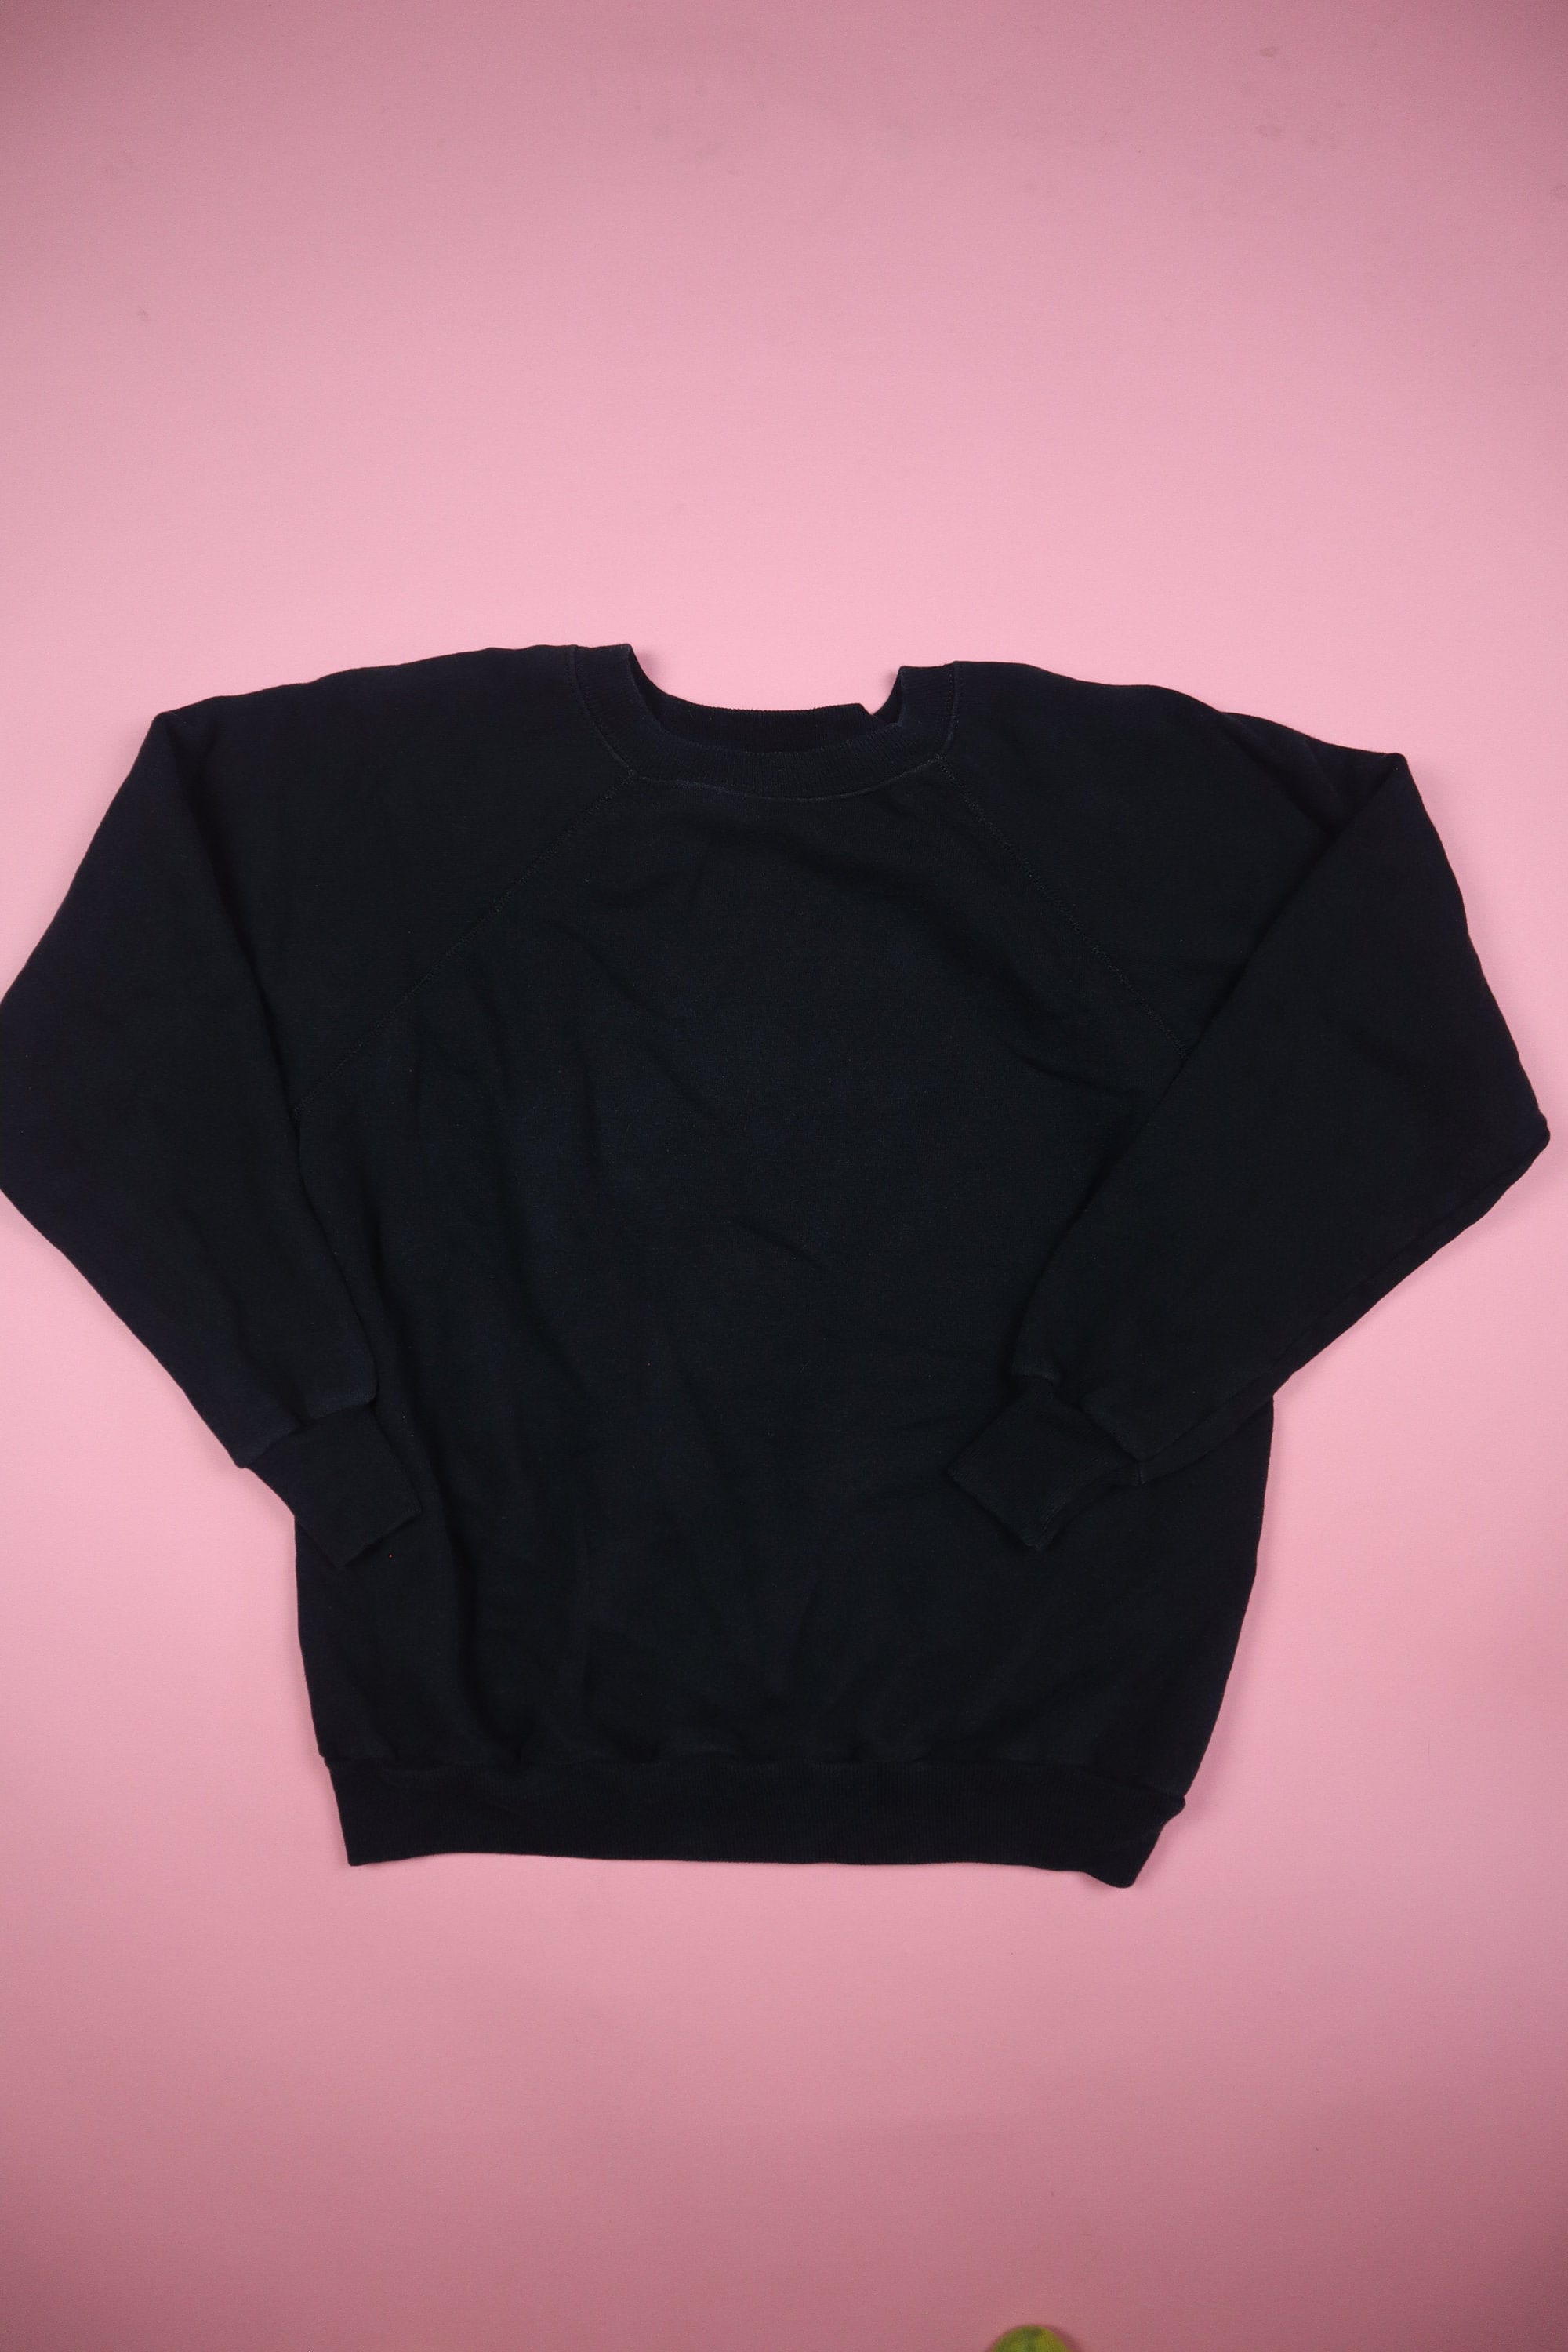 Vintage Pannill by Hanes Black 1990's Vintage Crewneck Sweatshirt